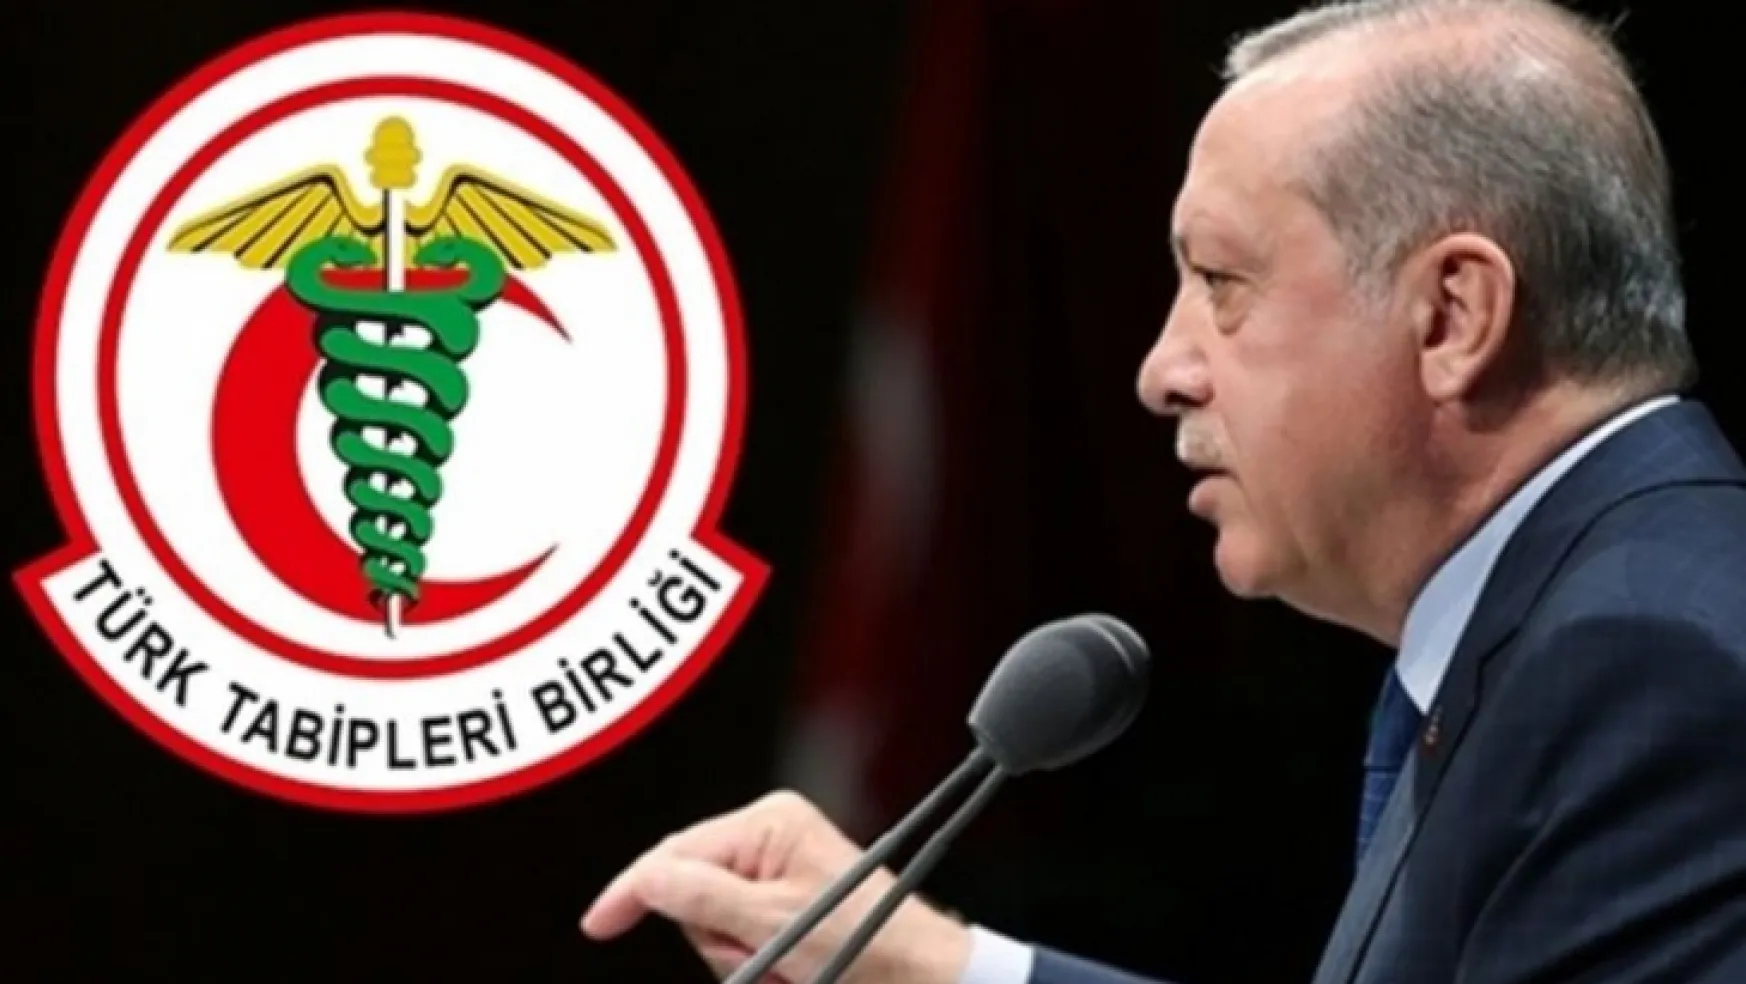 Türk Tabipleri Birliği'nden Erdoğan'a yanıt